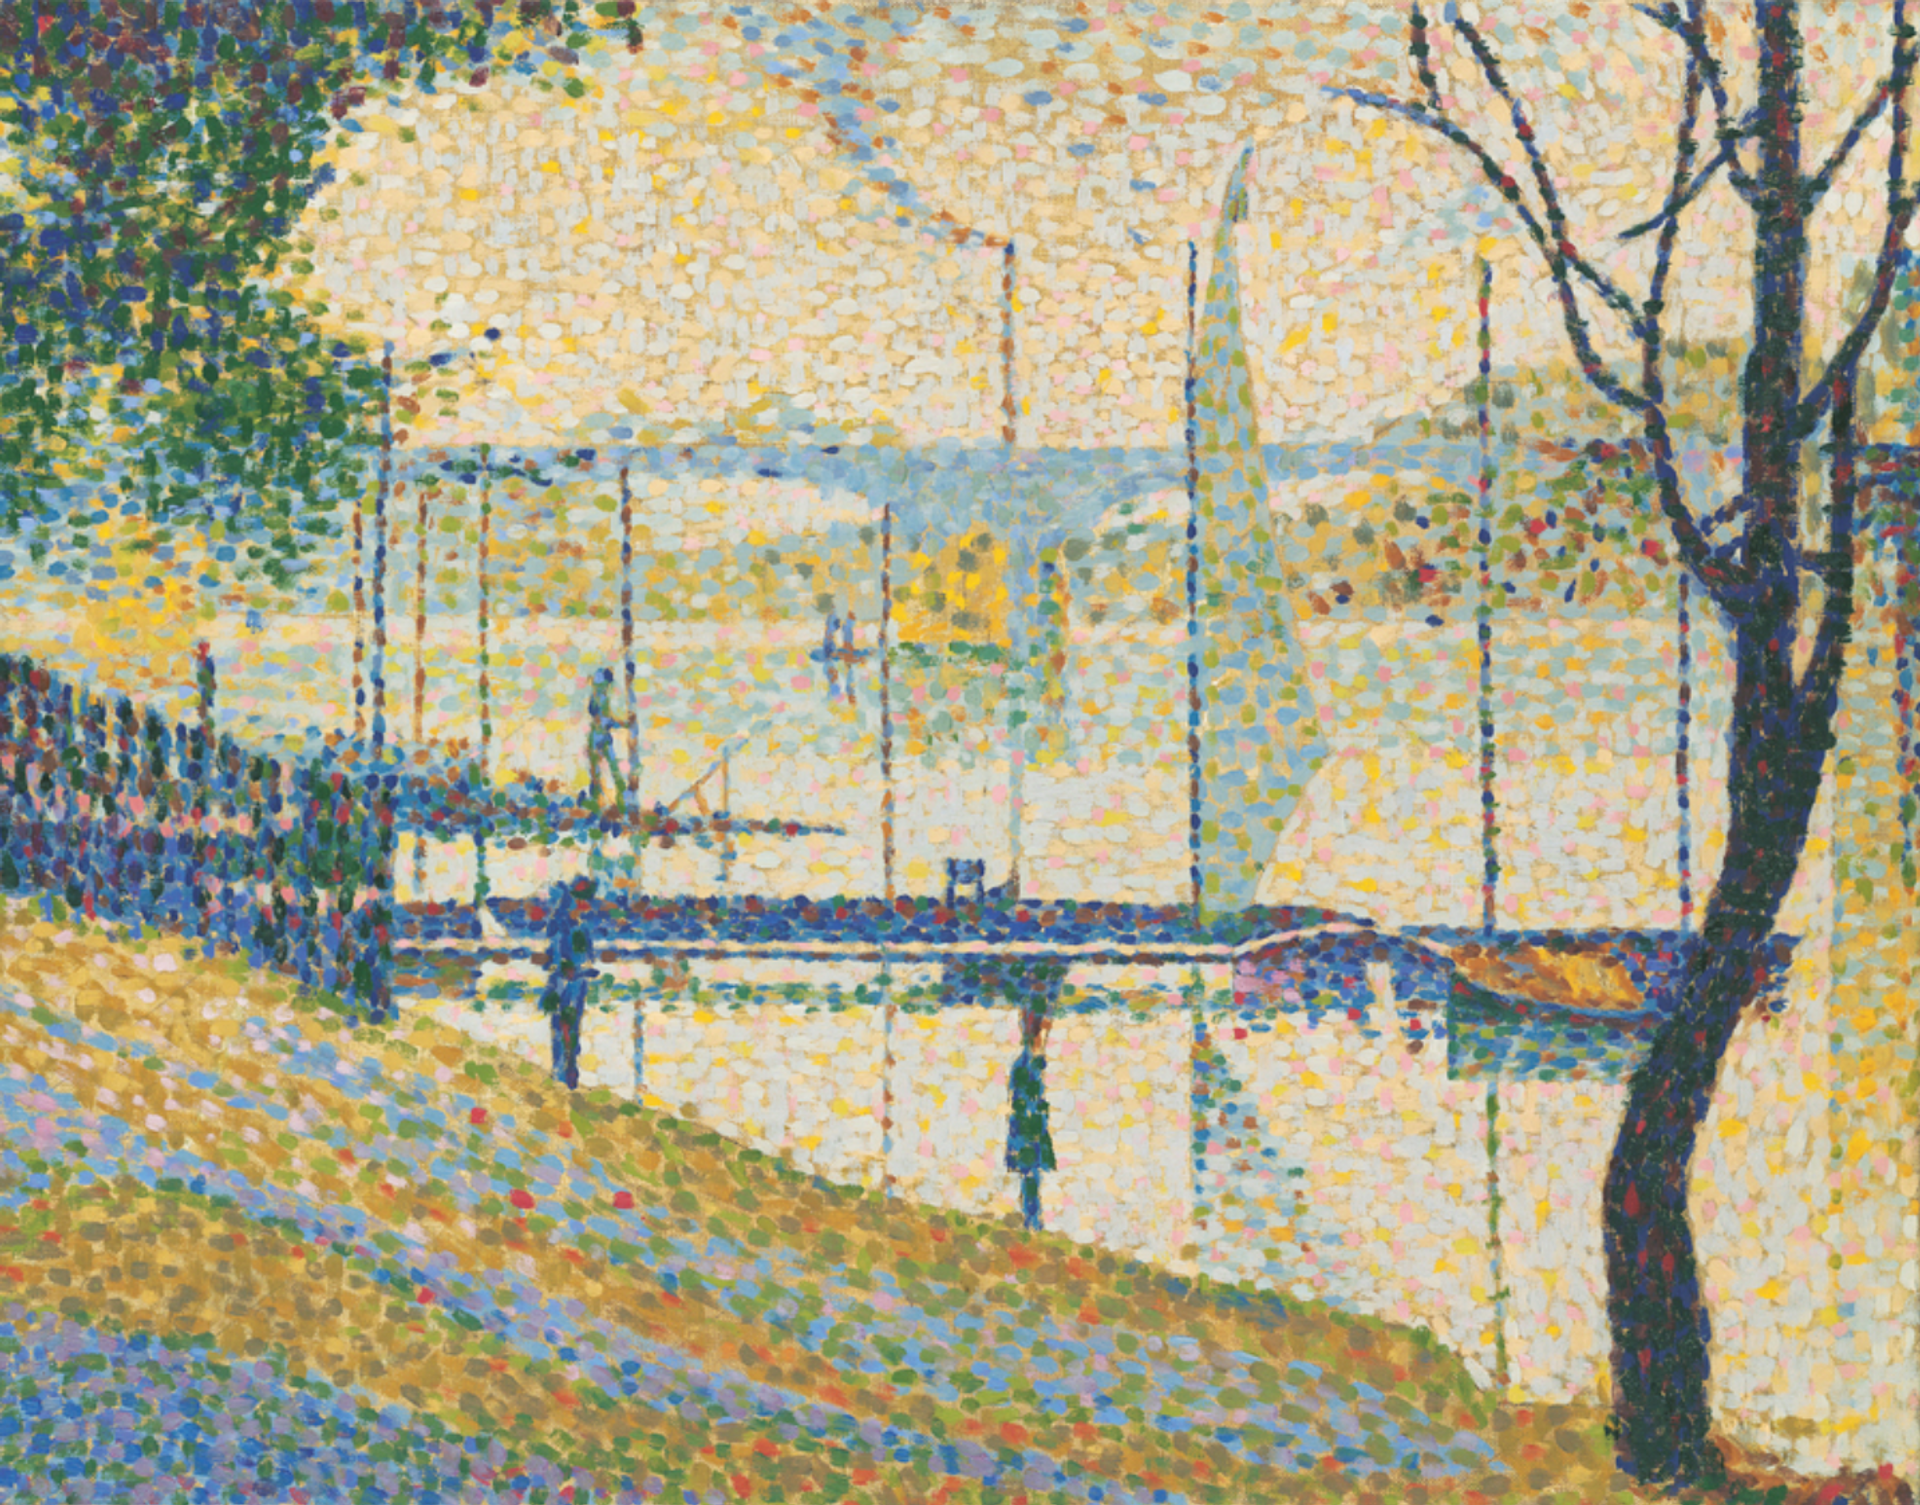 Copy after Le Pont de Courbevoie, George Seurat by Bridget Riley